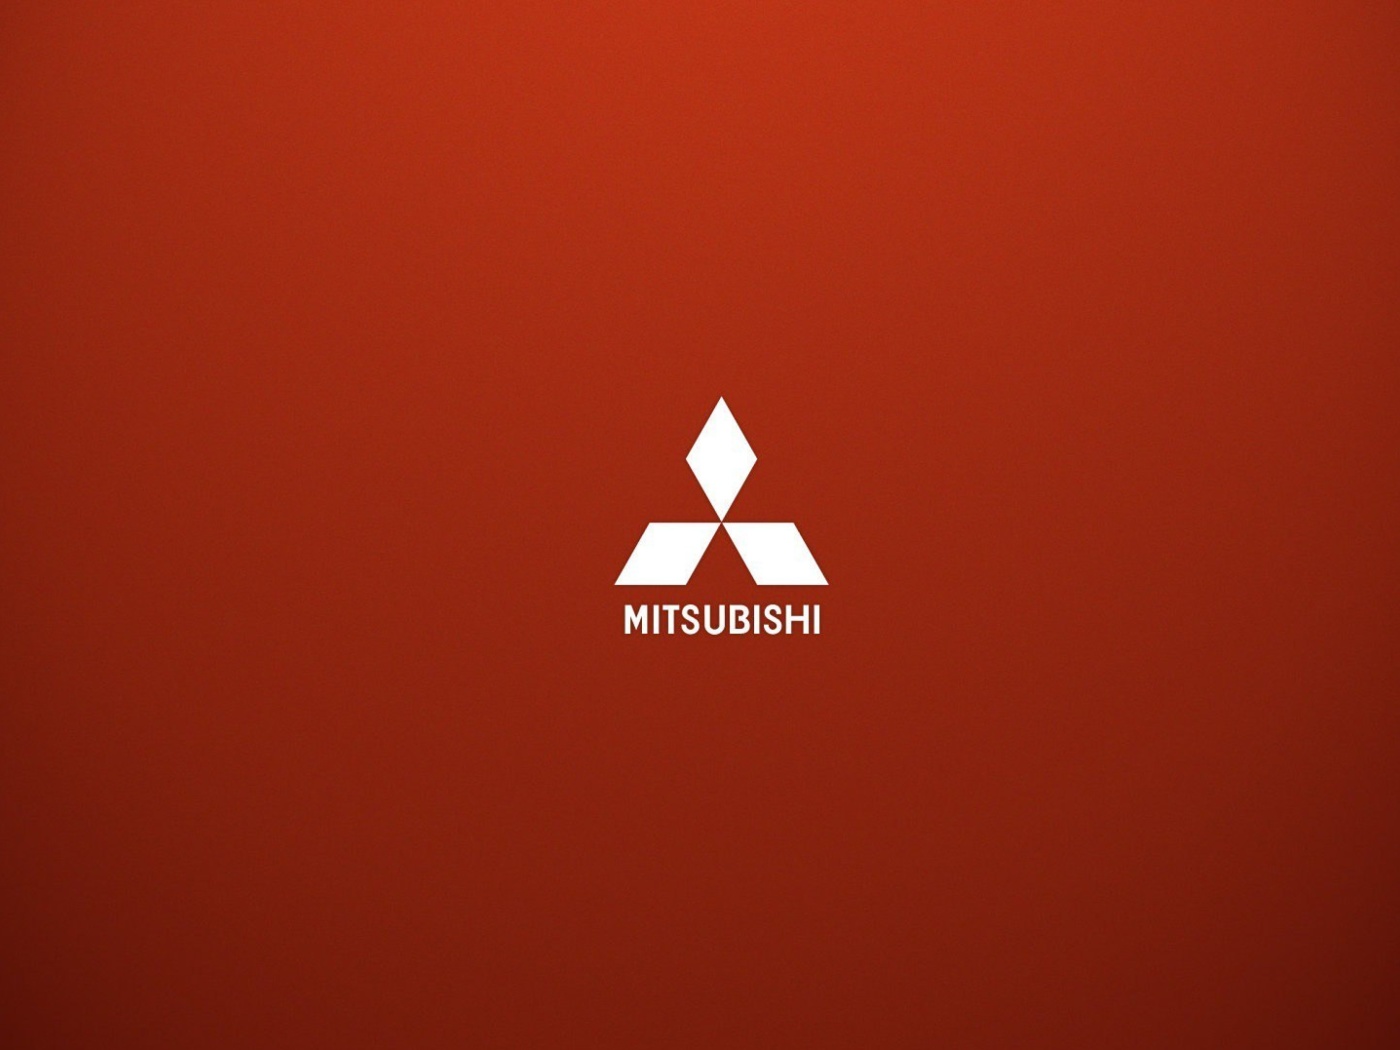 Mitsubishi logo wallpaper 1400x1050